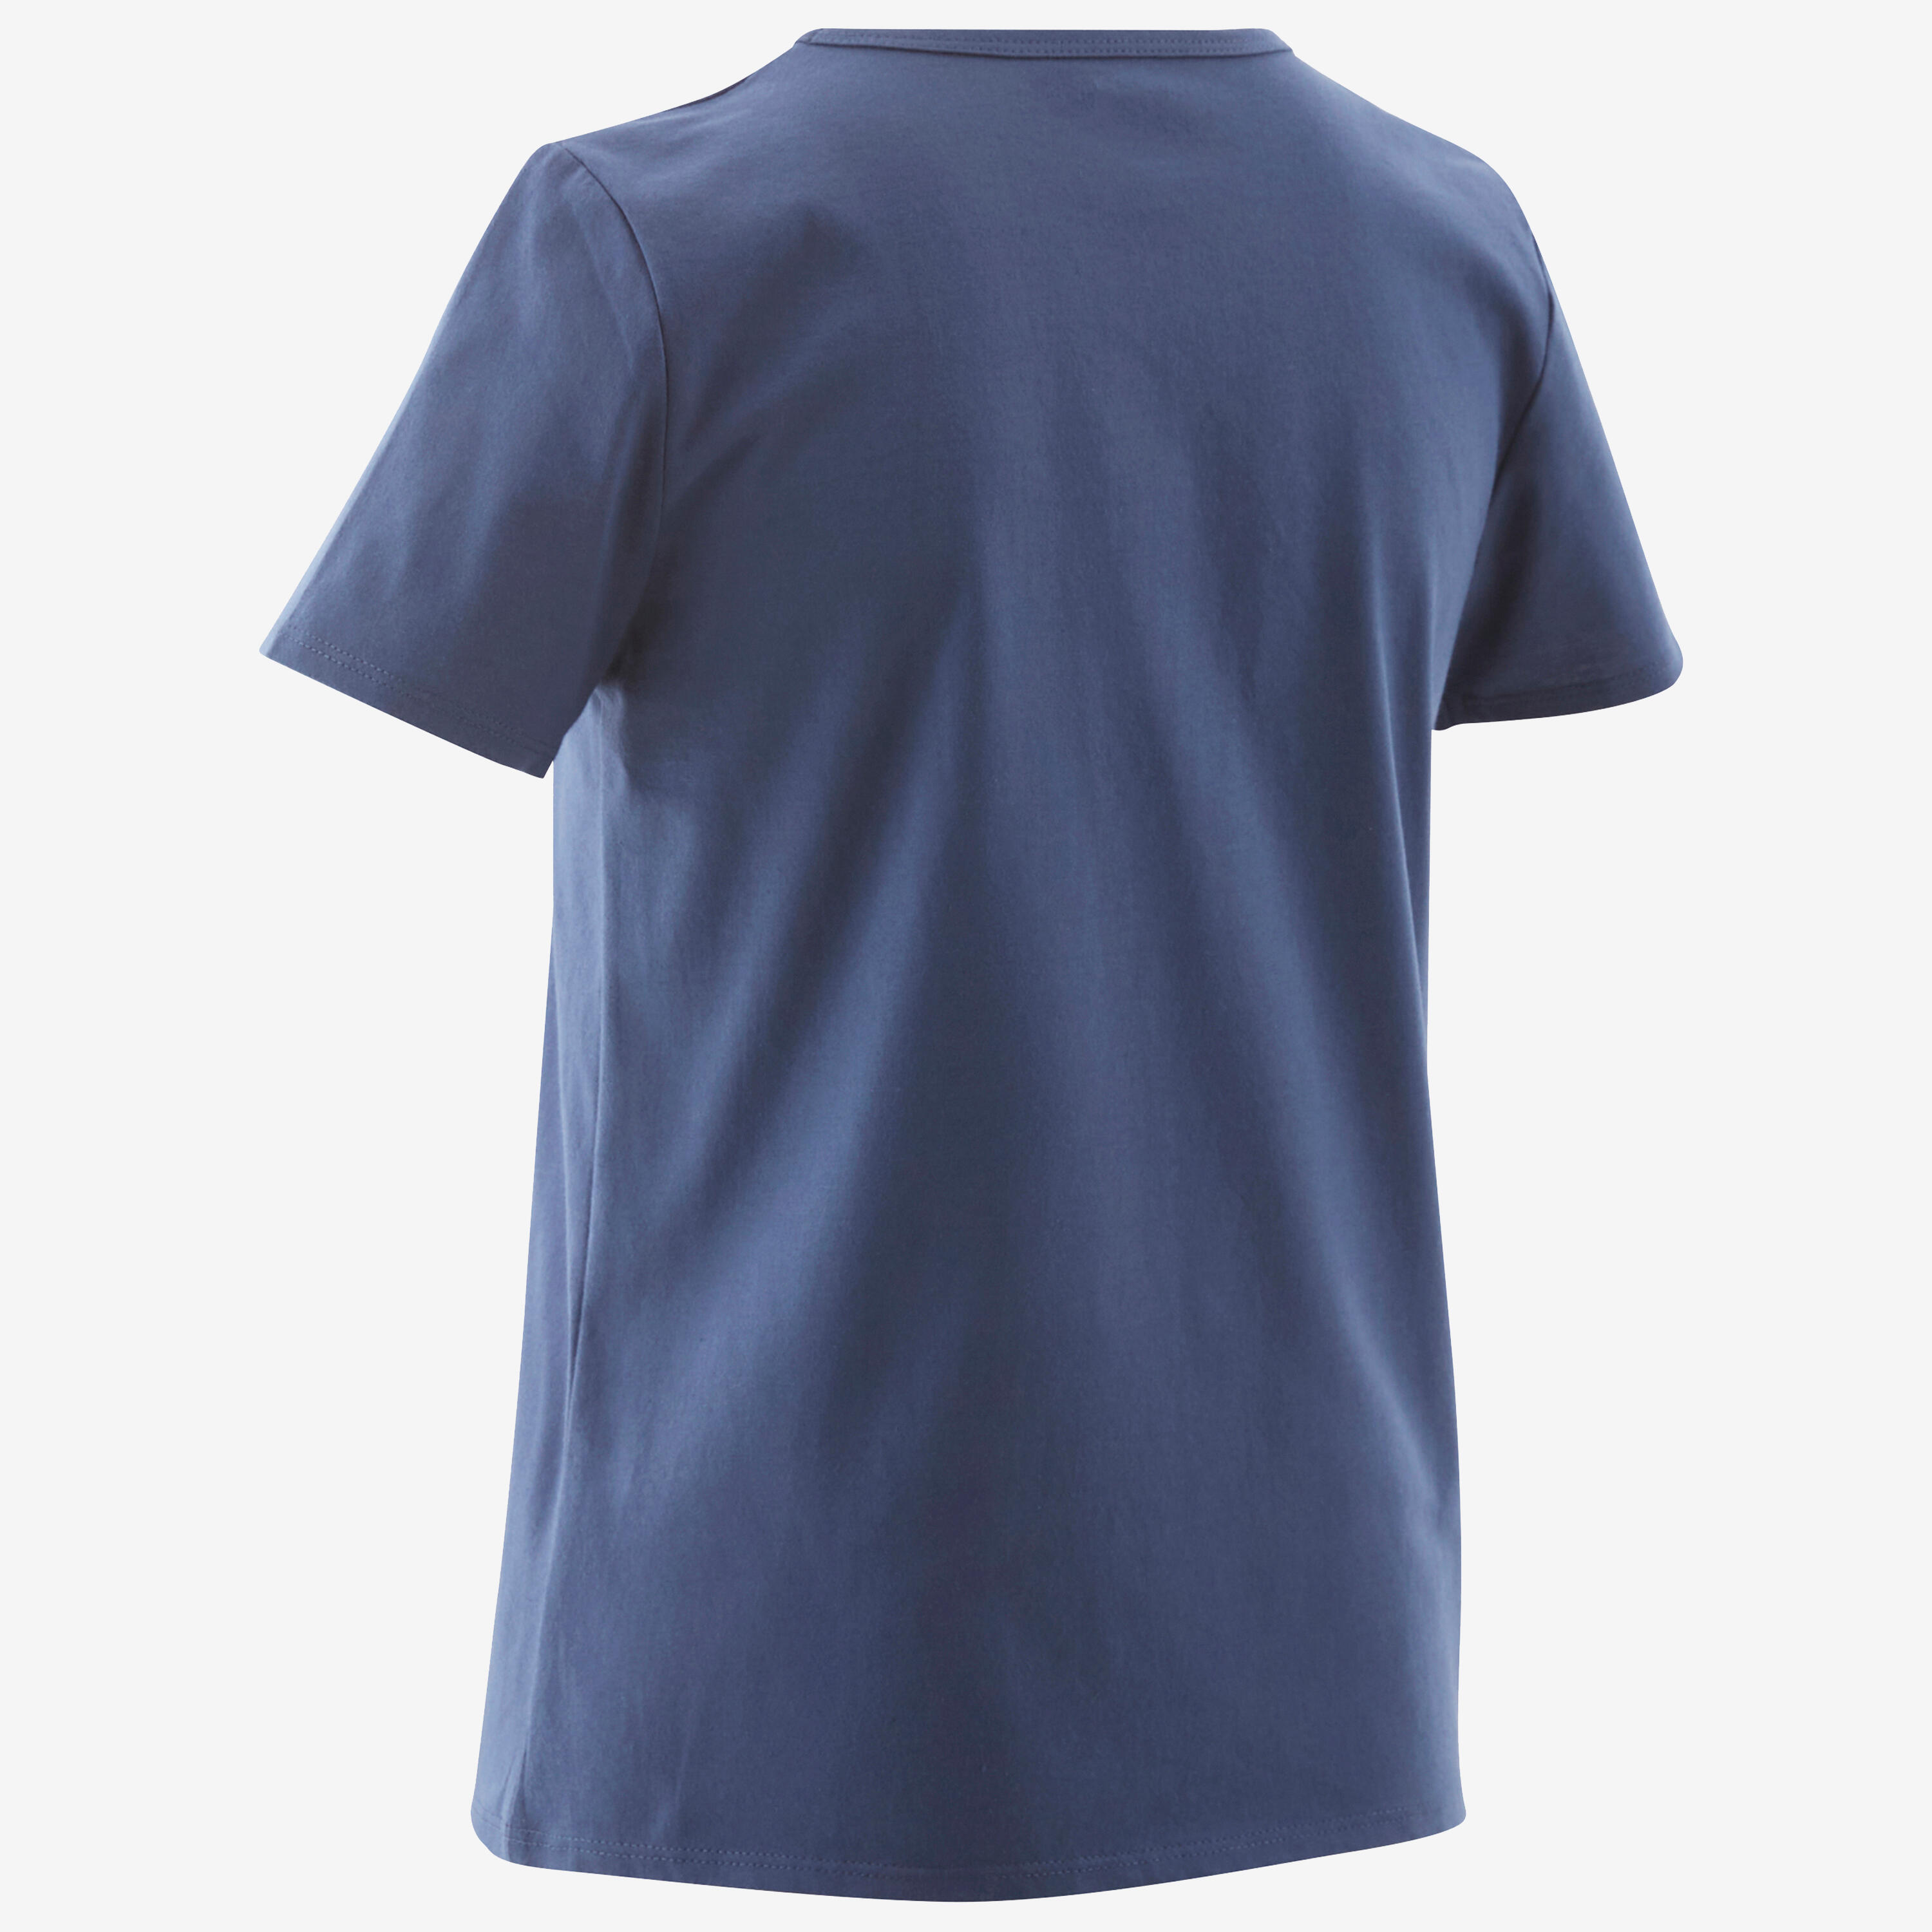 Kids' Basic T-Shirt - Blue Jean Print 3/4